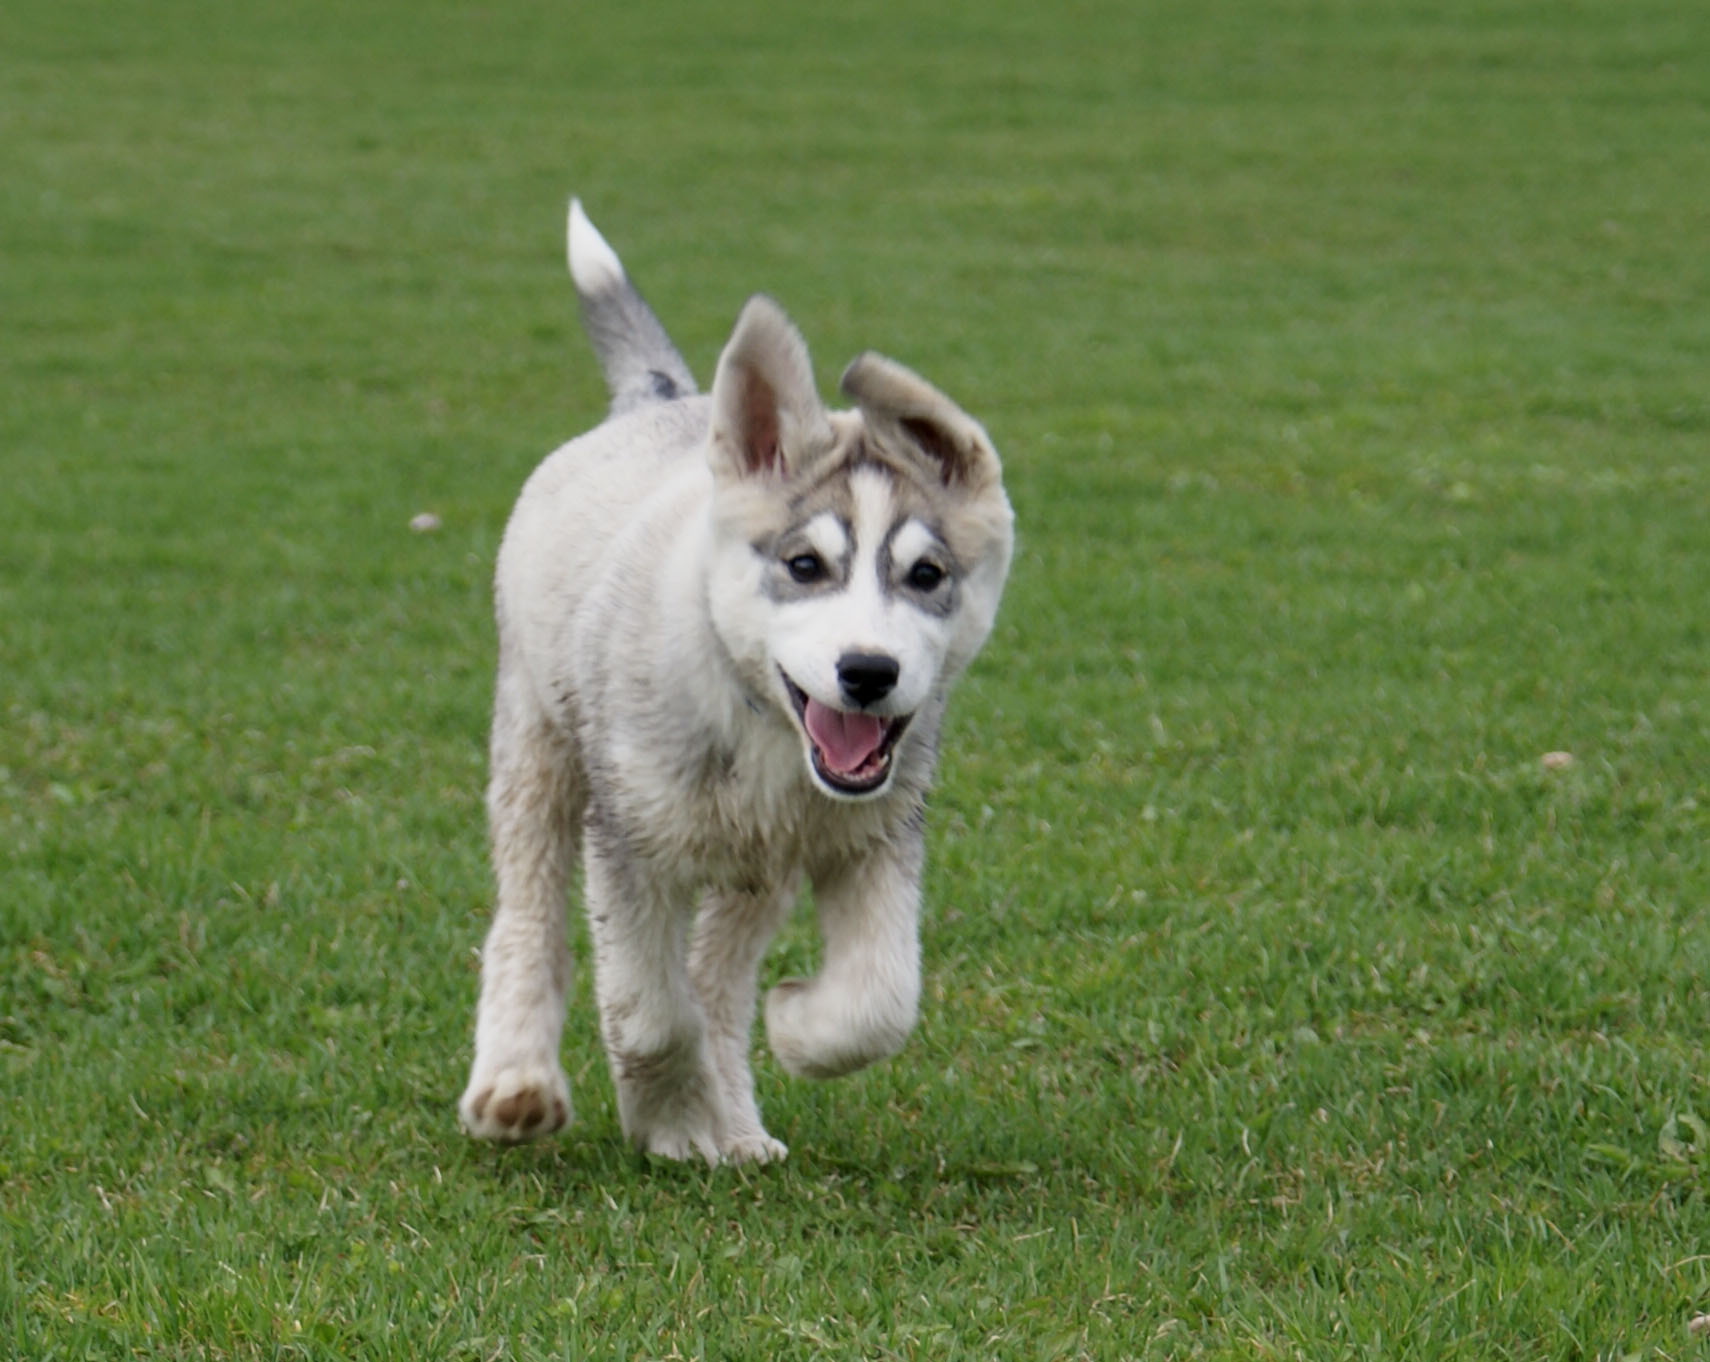 A dog running in a park. (Credit: Randi Hausken/Flickr)